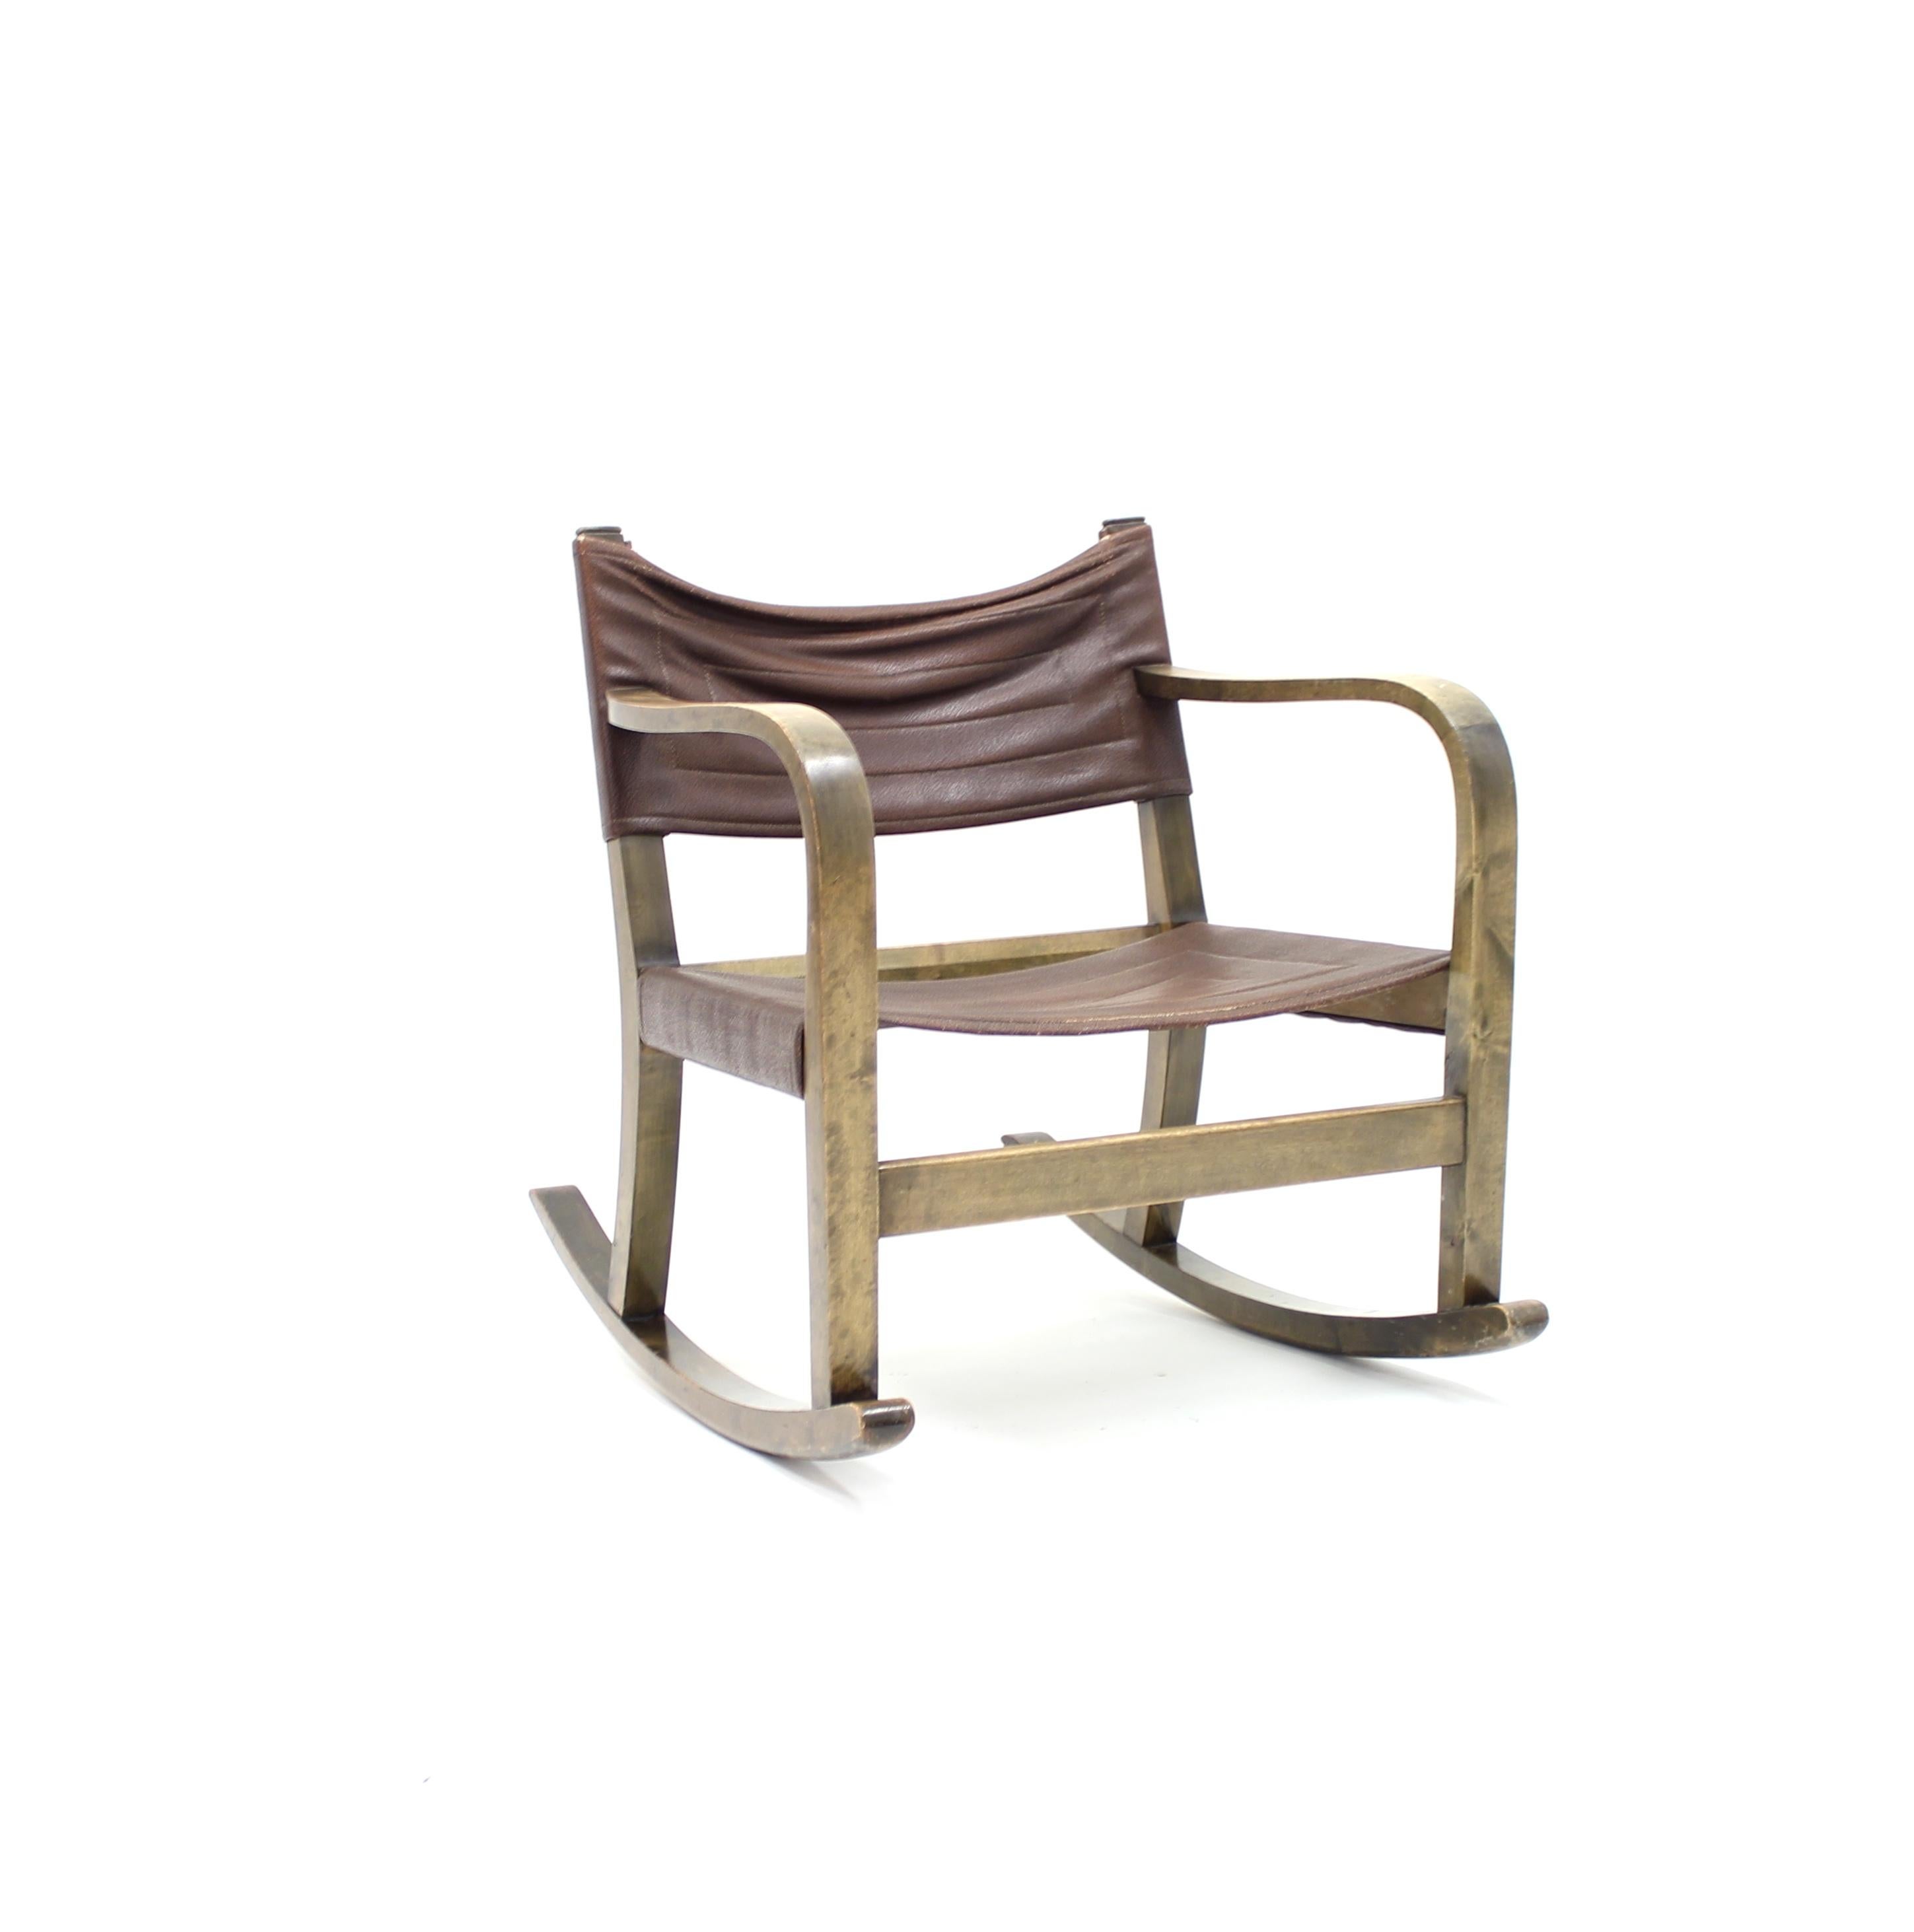 Diminutif fauteuil à bascule Art déco conçu par Eskil Sundahl pour le fabricant suédois SMF Bodafors dans les années 1930. Cadre en bouleau teinté, assise et dossier en simili-cuir Braun d'origine (pas du vrai simili-cuir). Très bon état vintage